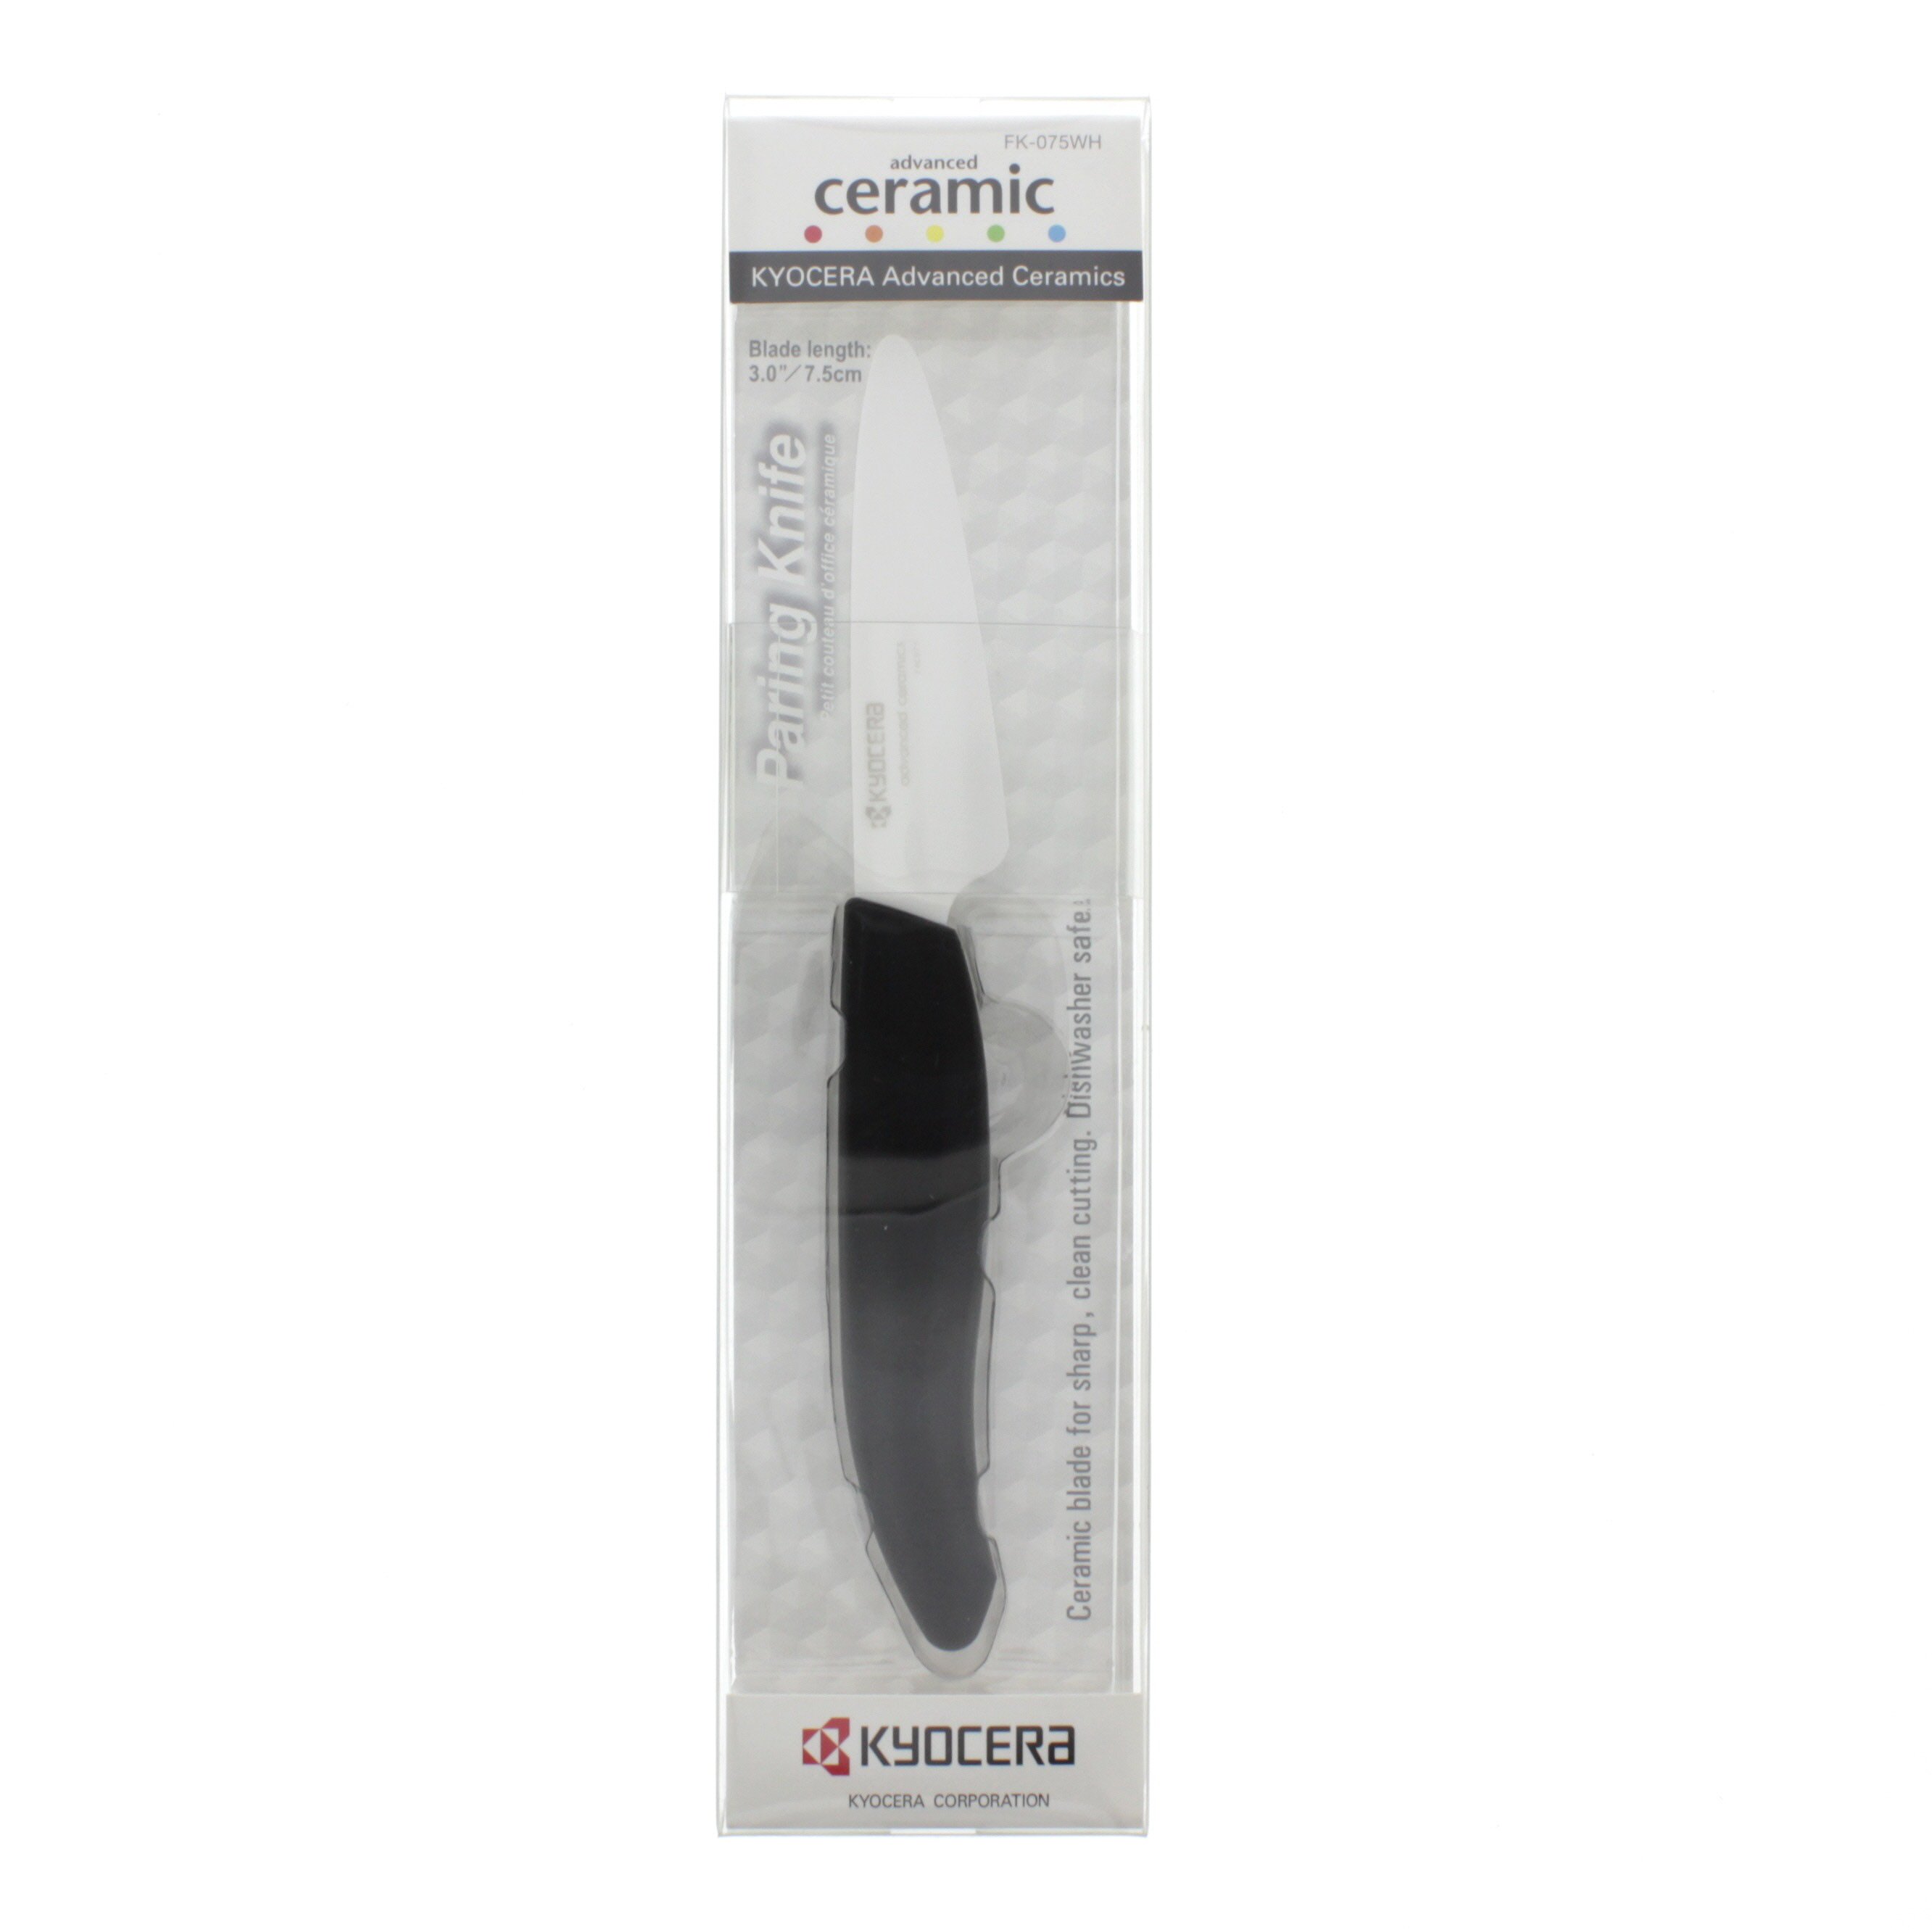 Kyocera 3 in Ceramic Paring Knife